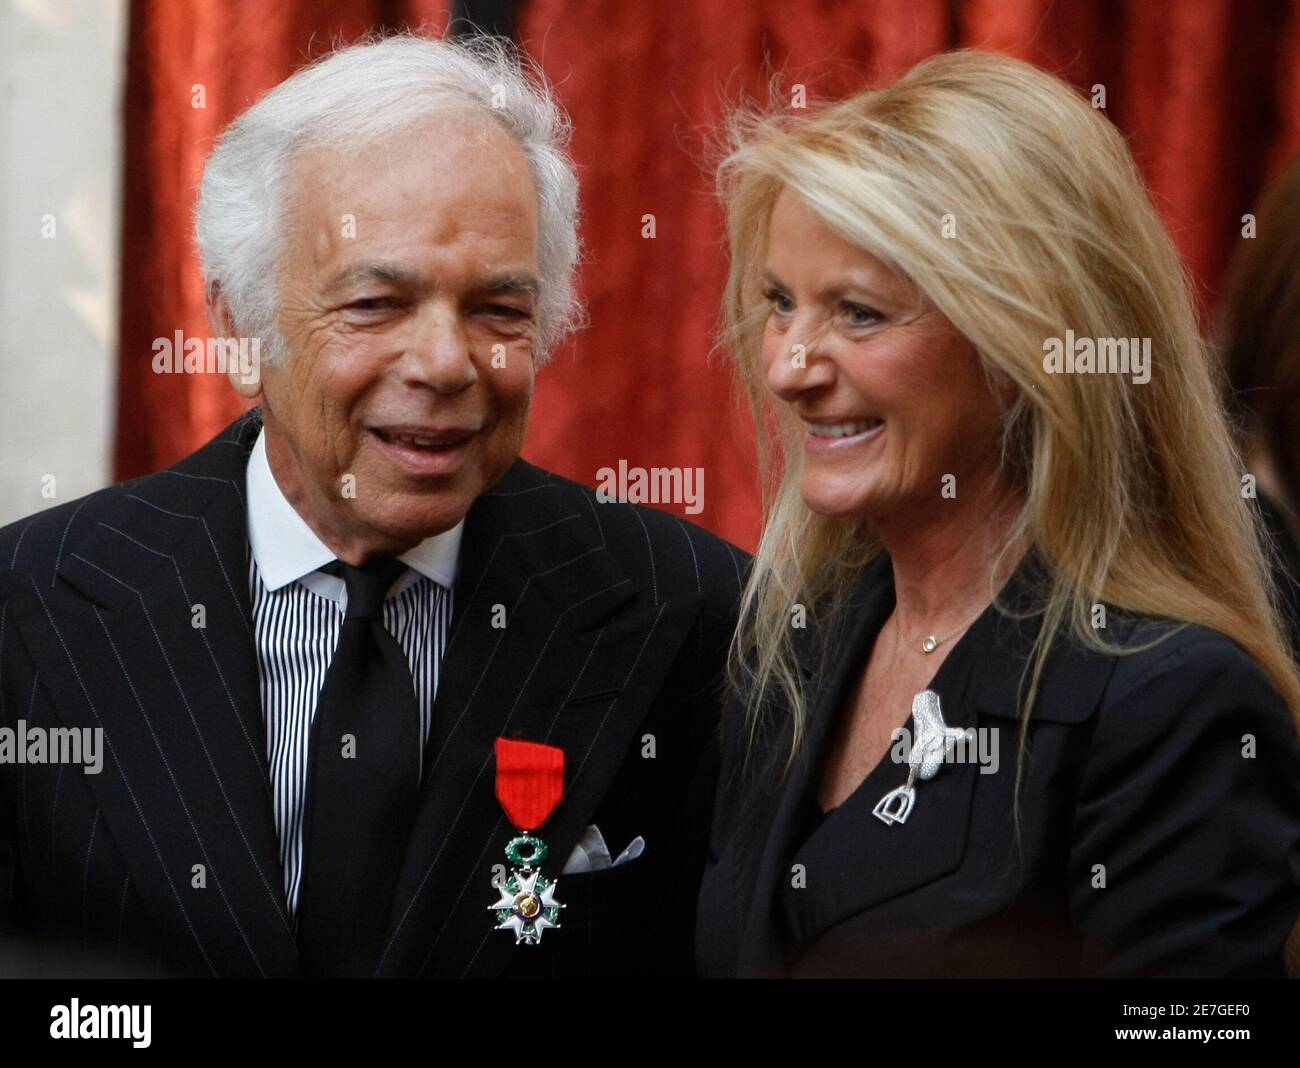 Le couturier américain Ralph Lauren (L) pose avec sa femme Ricky après  avoir été nommé Chevalier de la Légion d'honneur lors d'une cérémonie à  l'Elysée Palace à Paris, le 15 avril 2010.